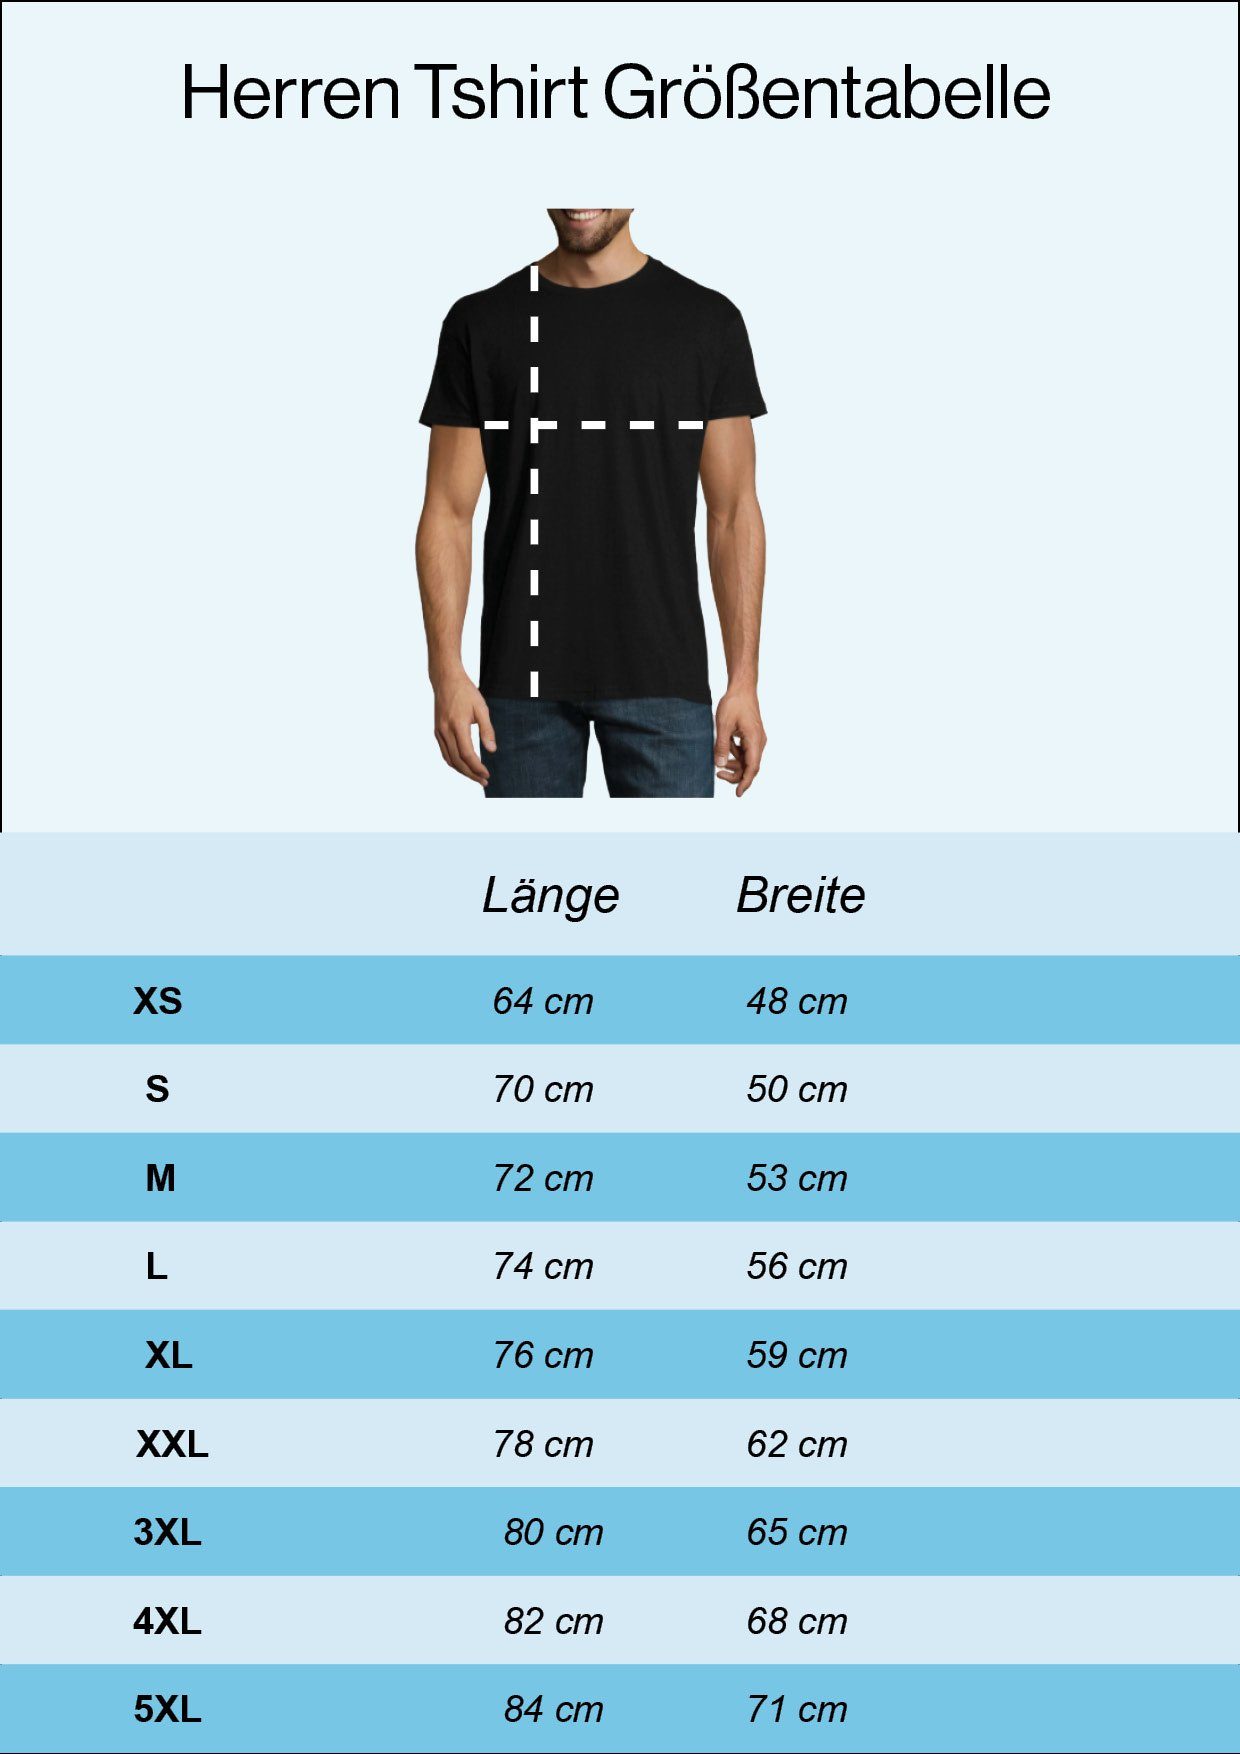 Frontprint T-Shirt Designz From mit to trendigem Herren Youth T-Shirt North Weiss Valhalla